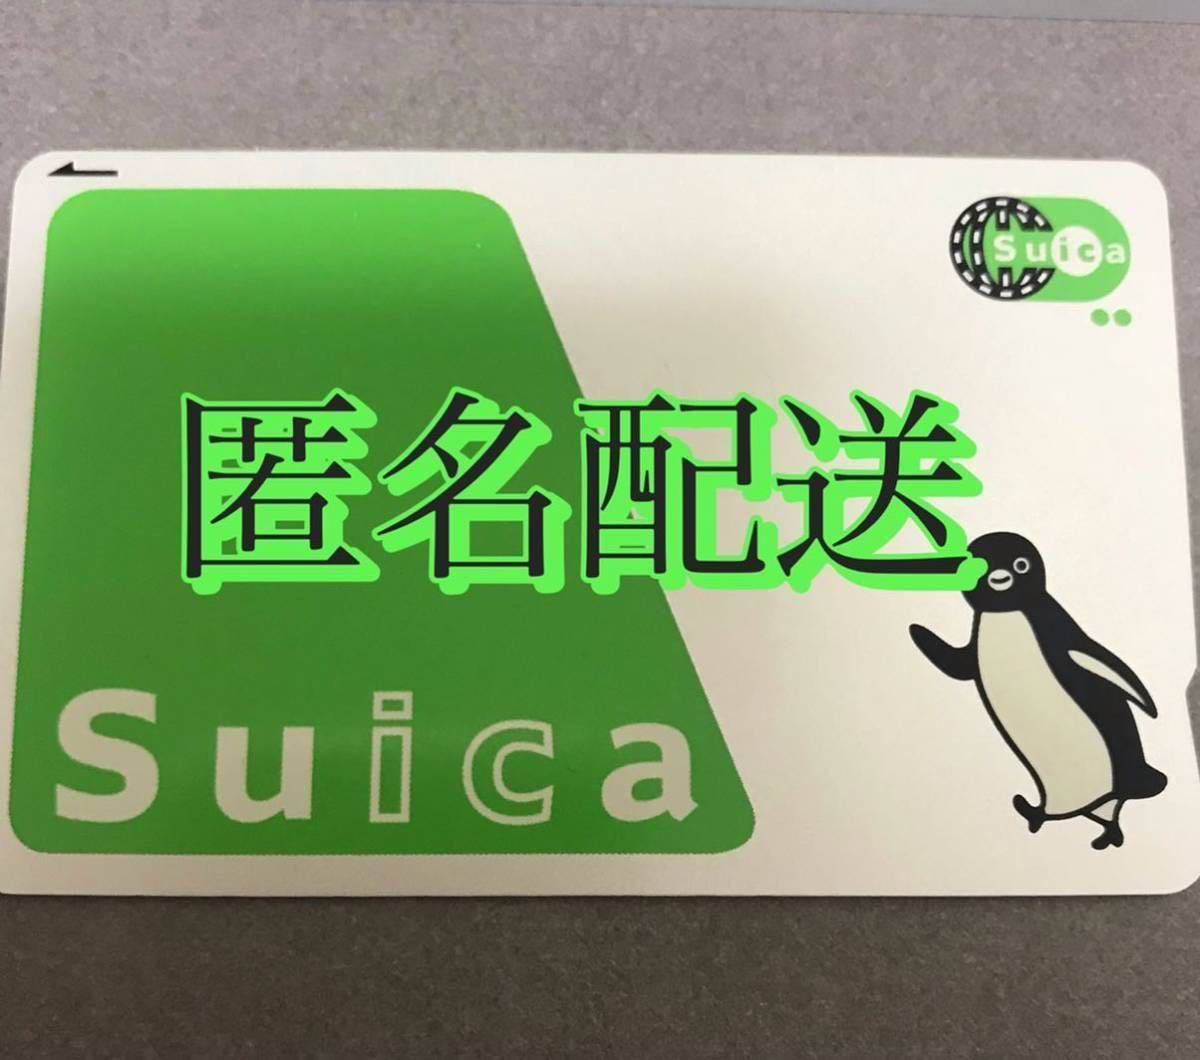 Suica スイカカードの画像1